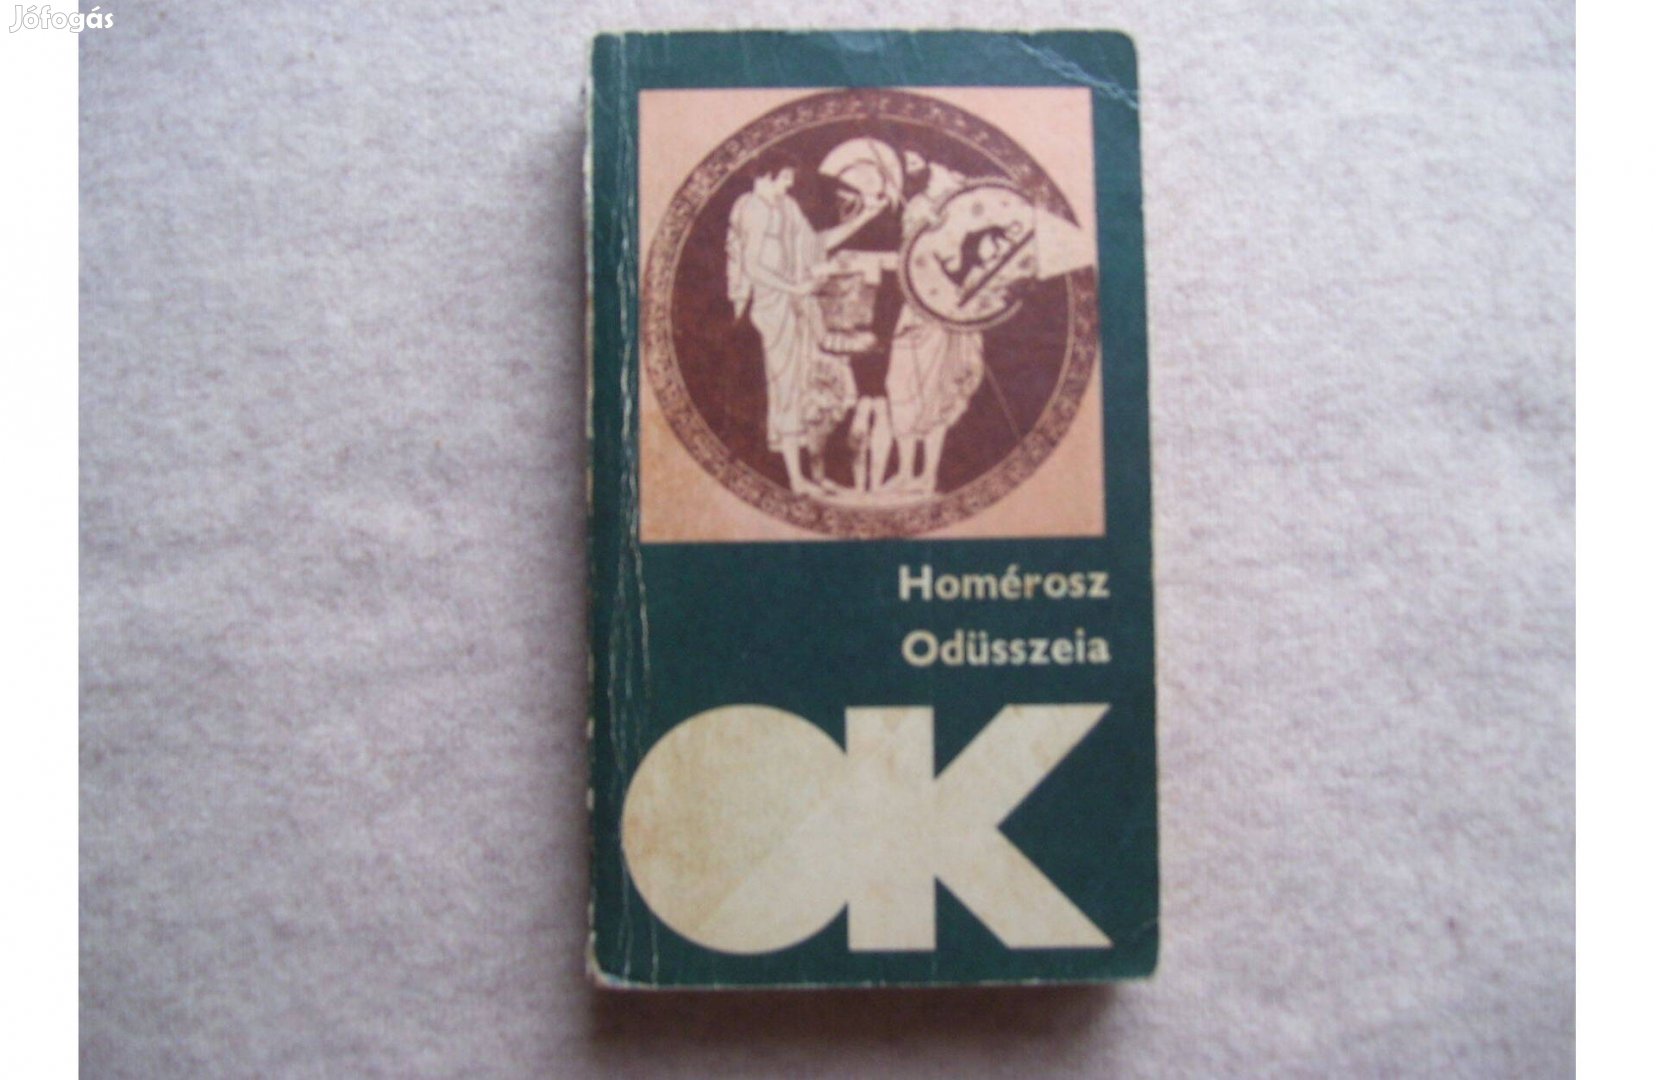 Homérosz Odüsszeia